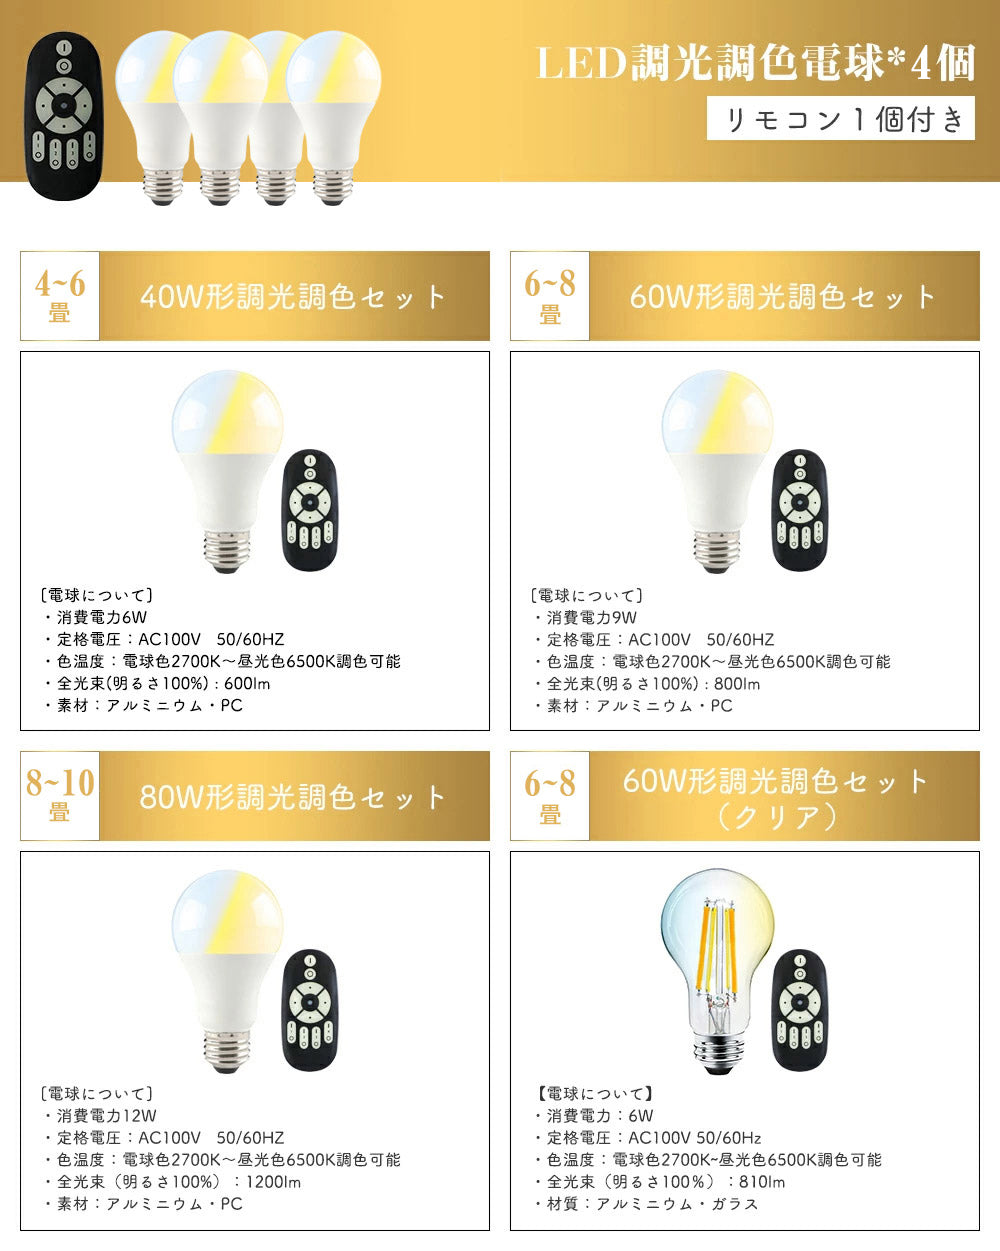 【SETDJ-I】【送料無料】シーリングライト 4灯 スポットライト LED対応 E26 照明器具 天井照明 6畳 8畳 10畳